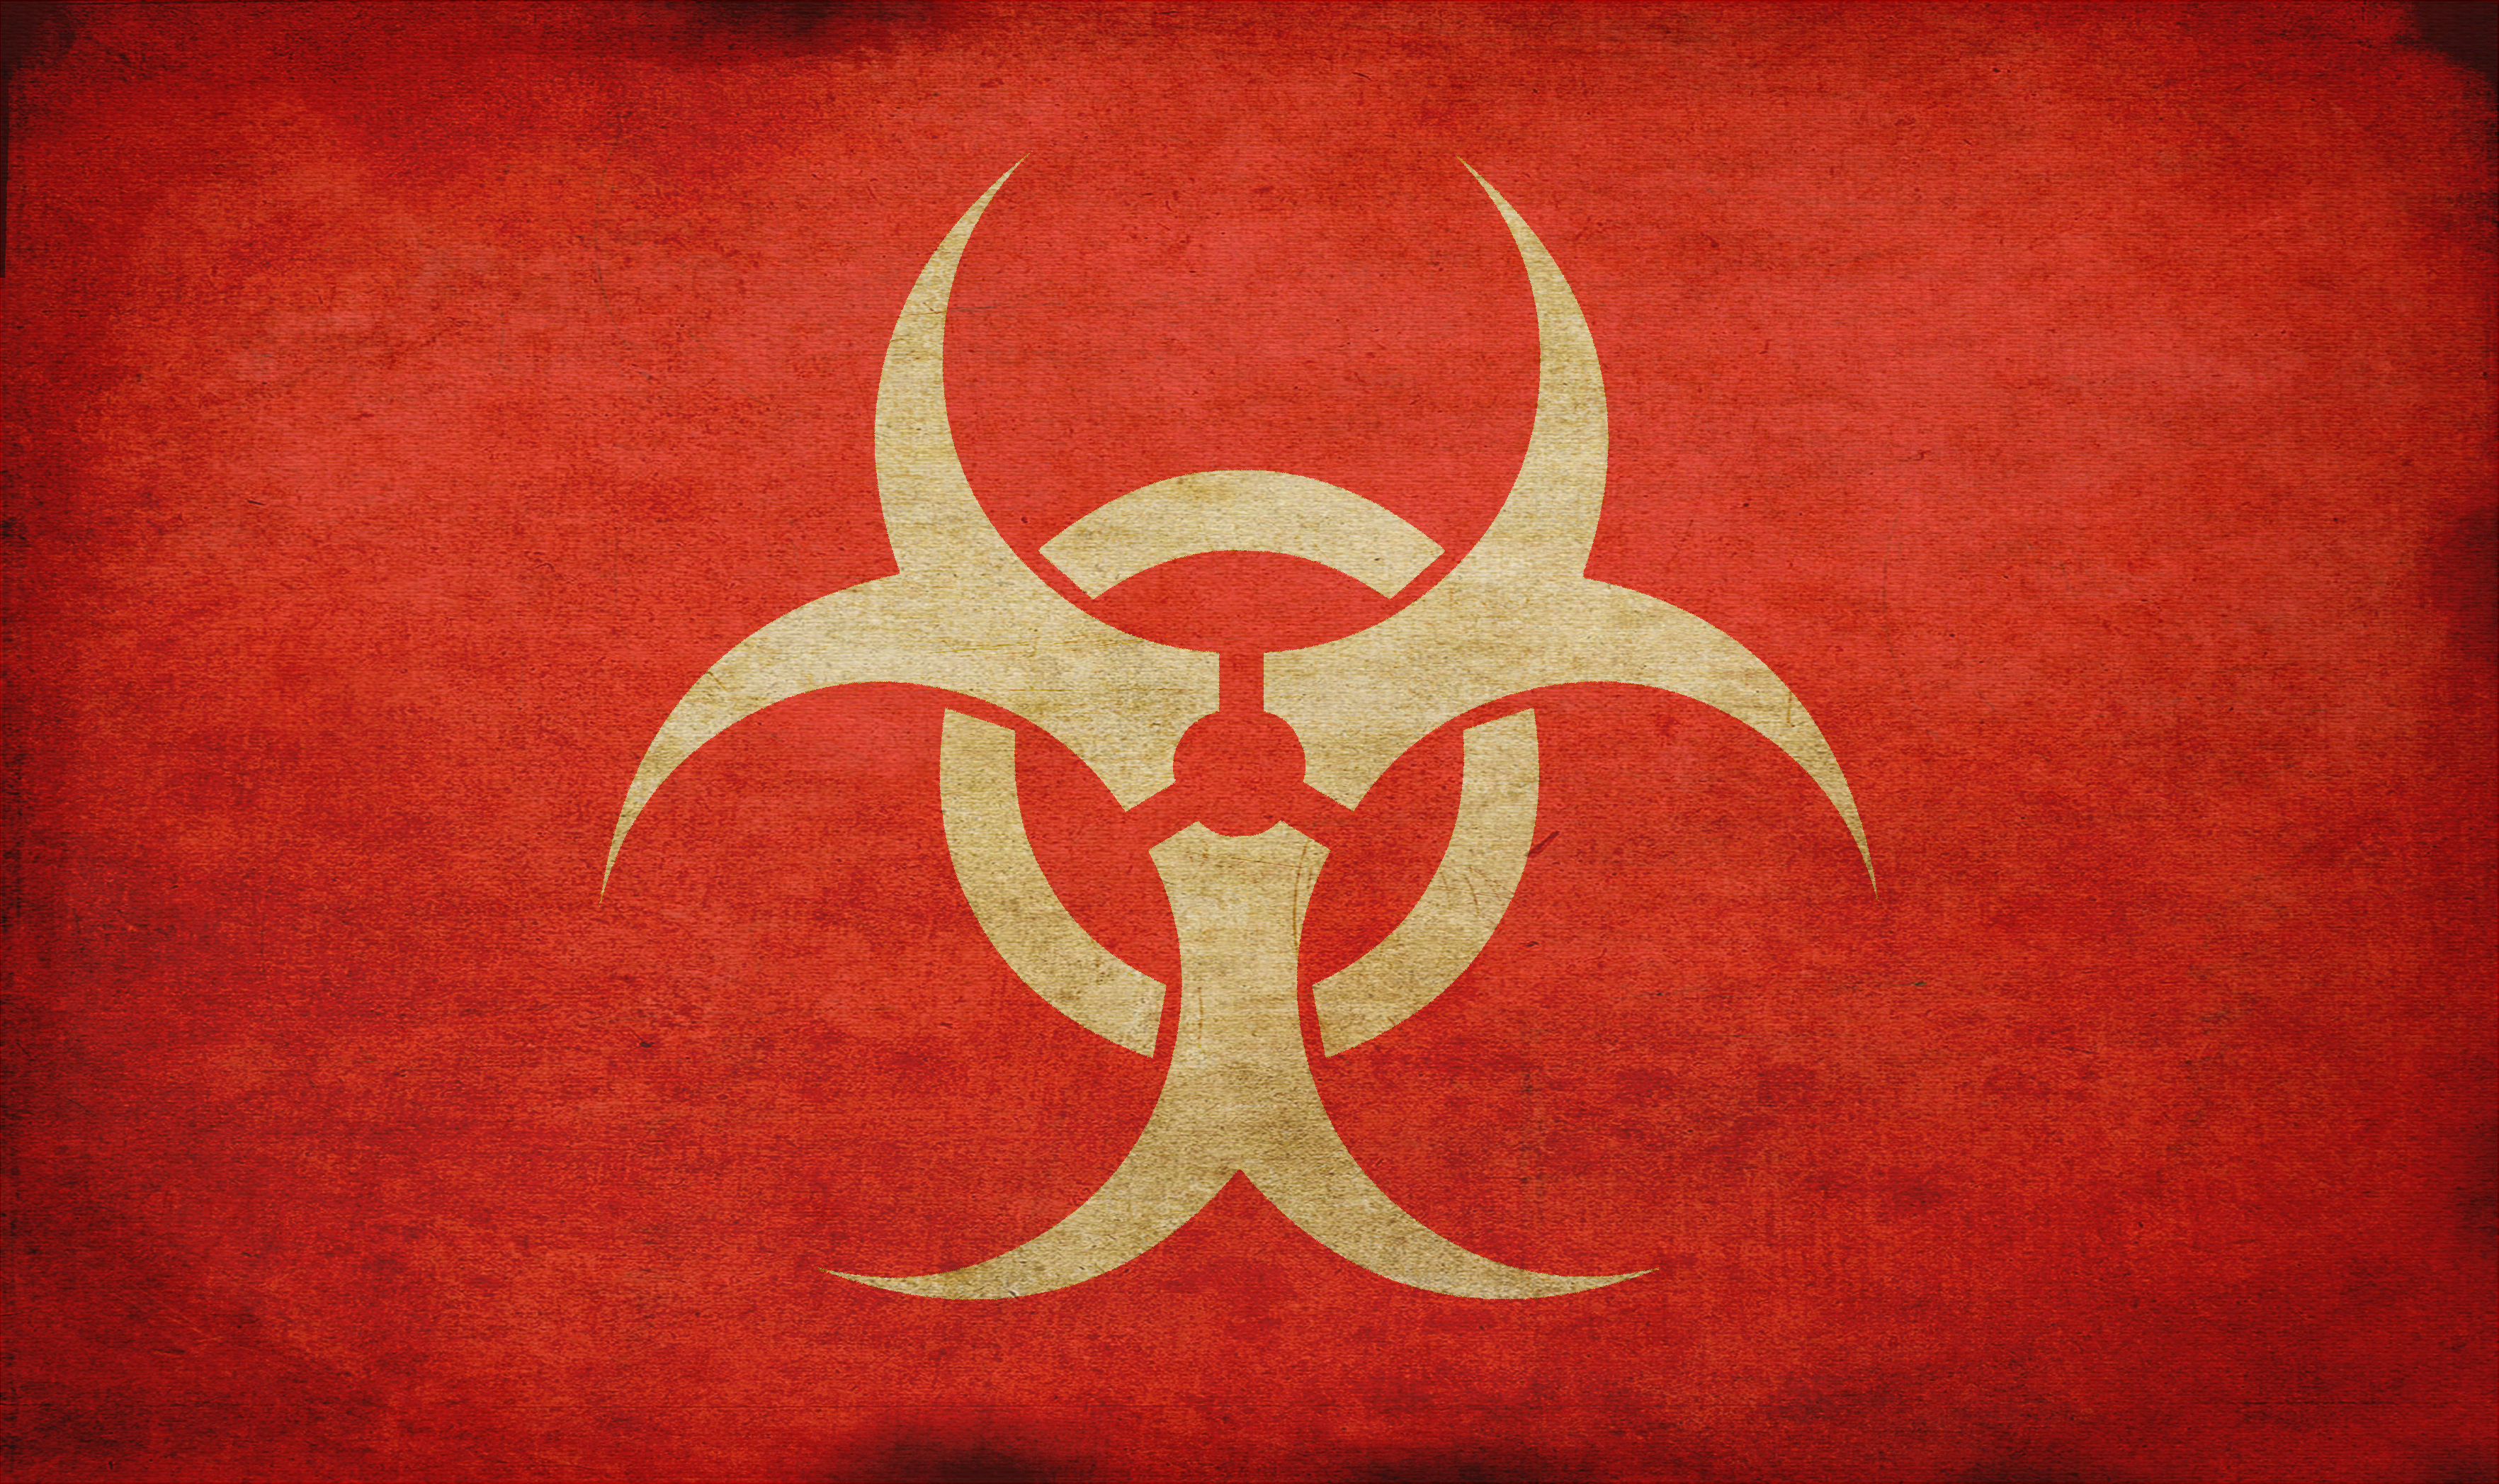 Biohazard - Red by tonemapped on DeviantArt